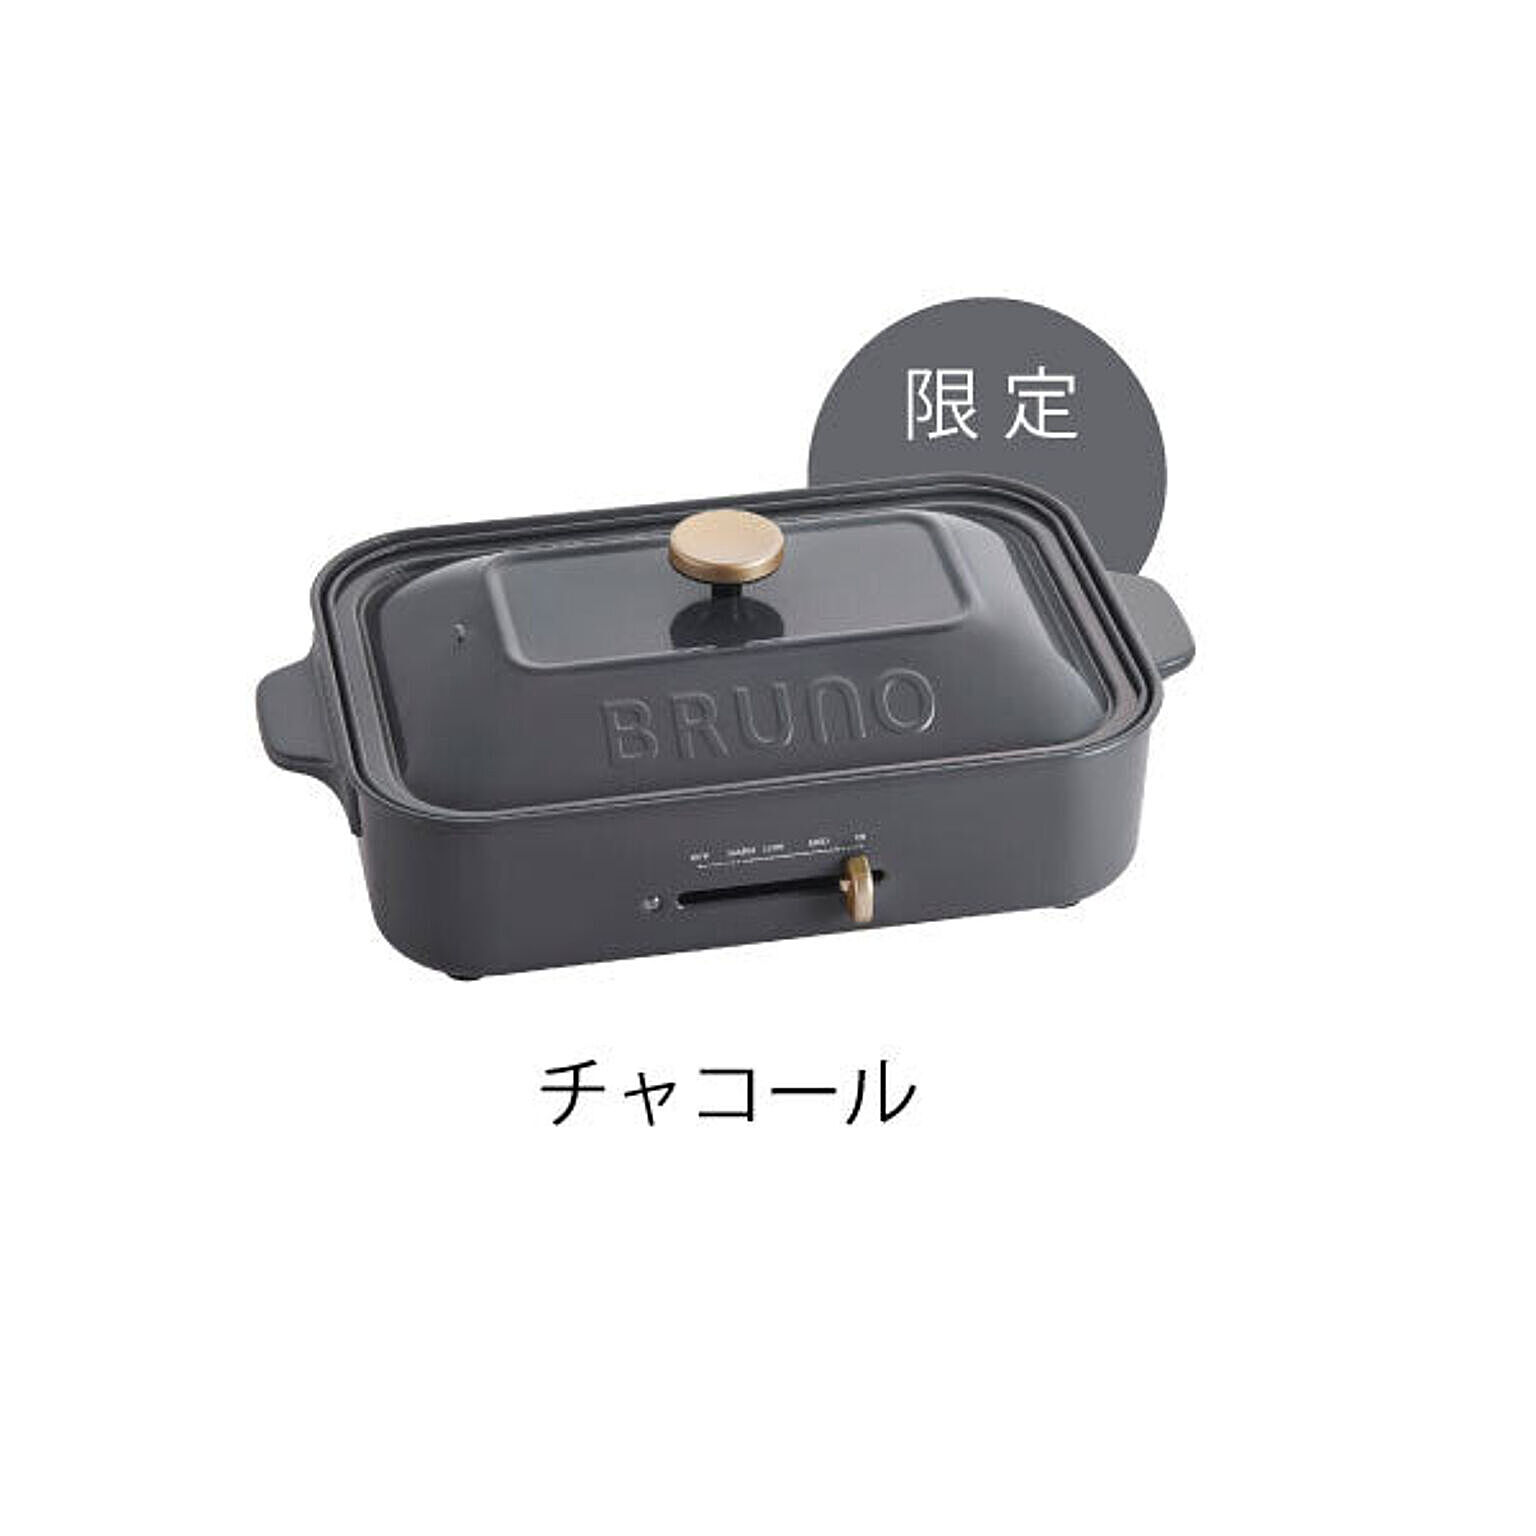 BRUNO / コンパクトホットプレート 